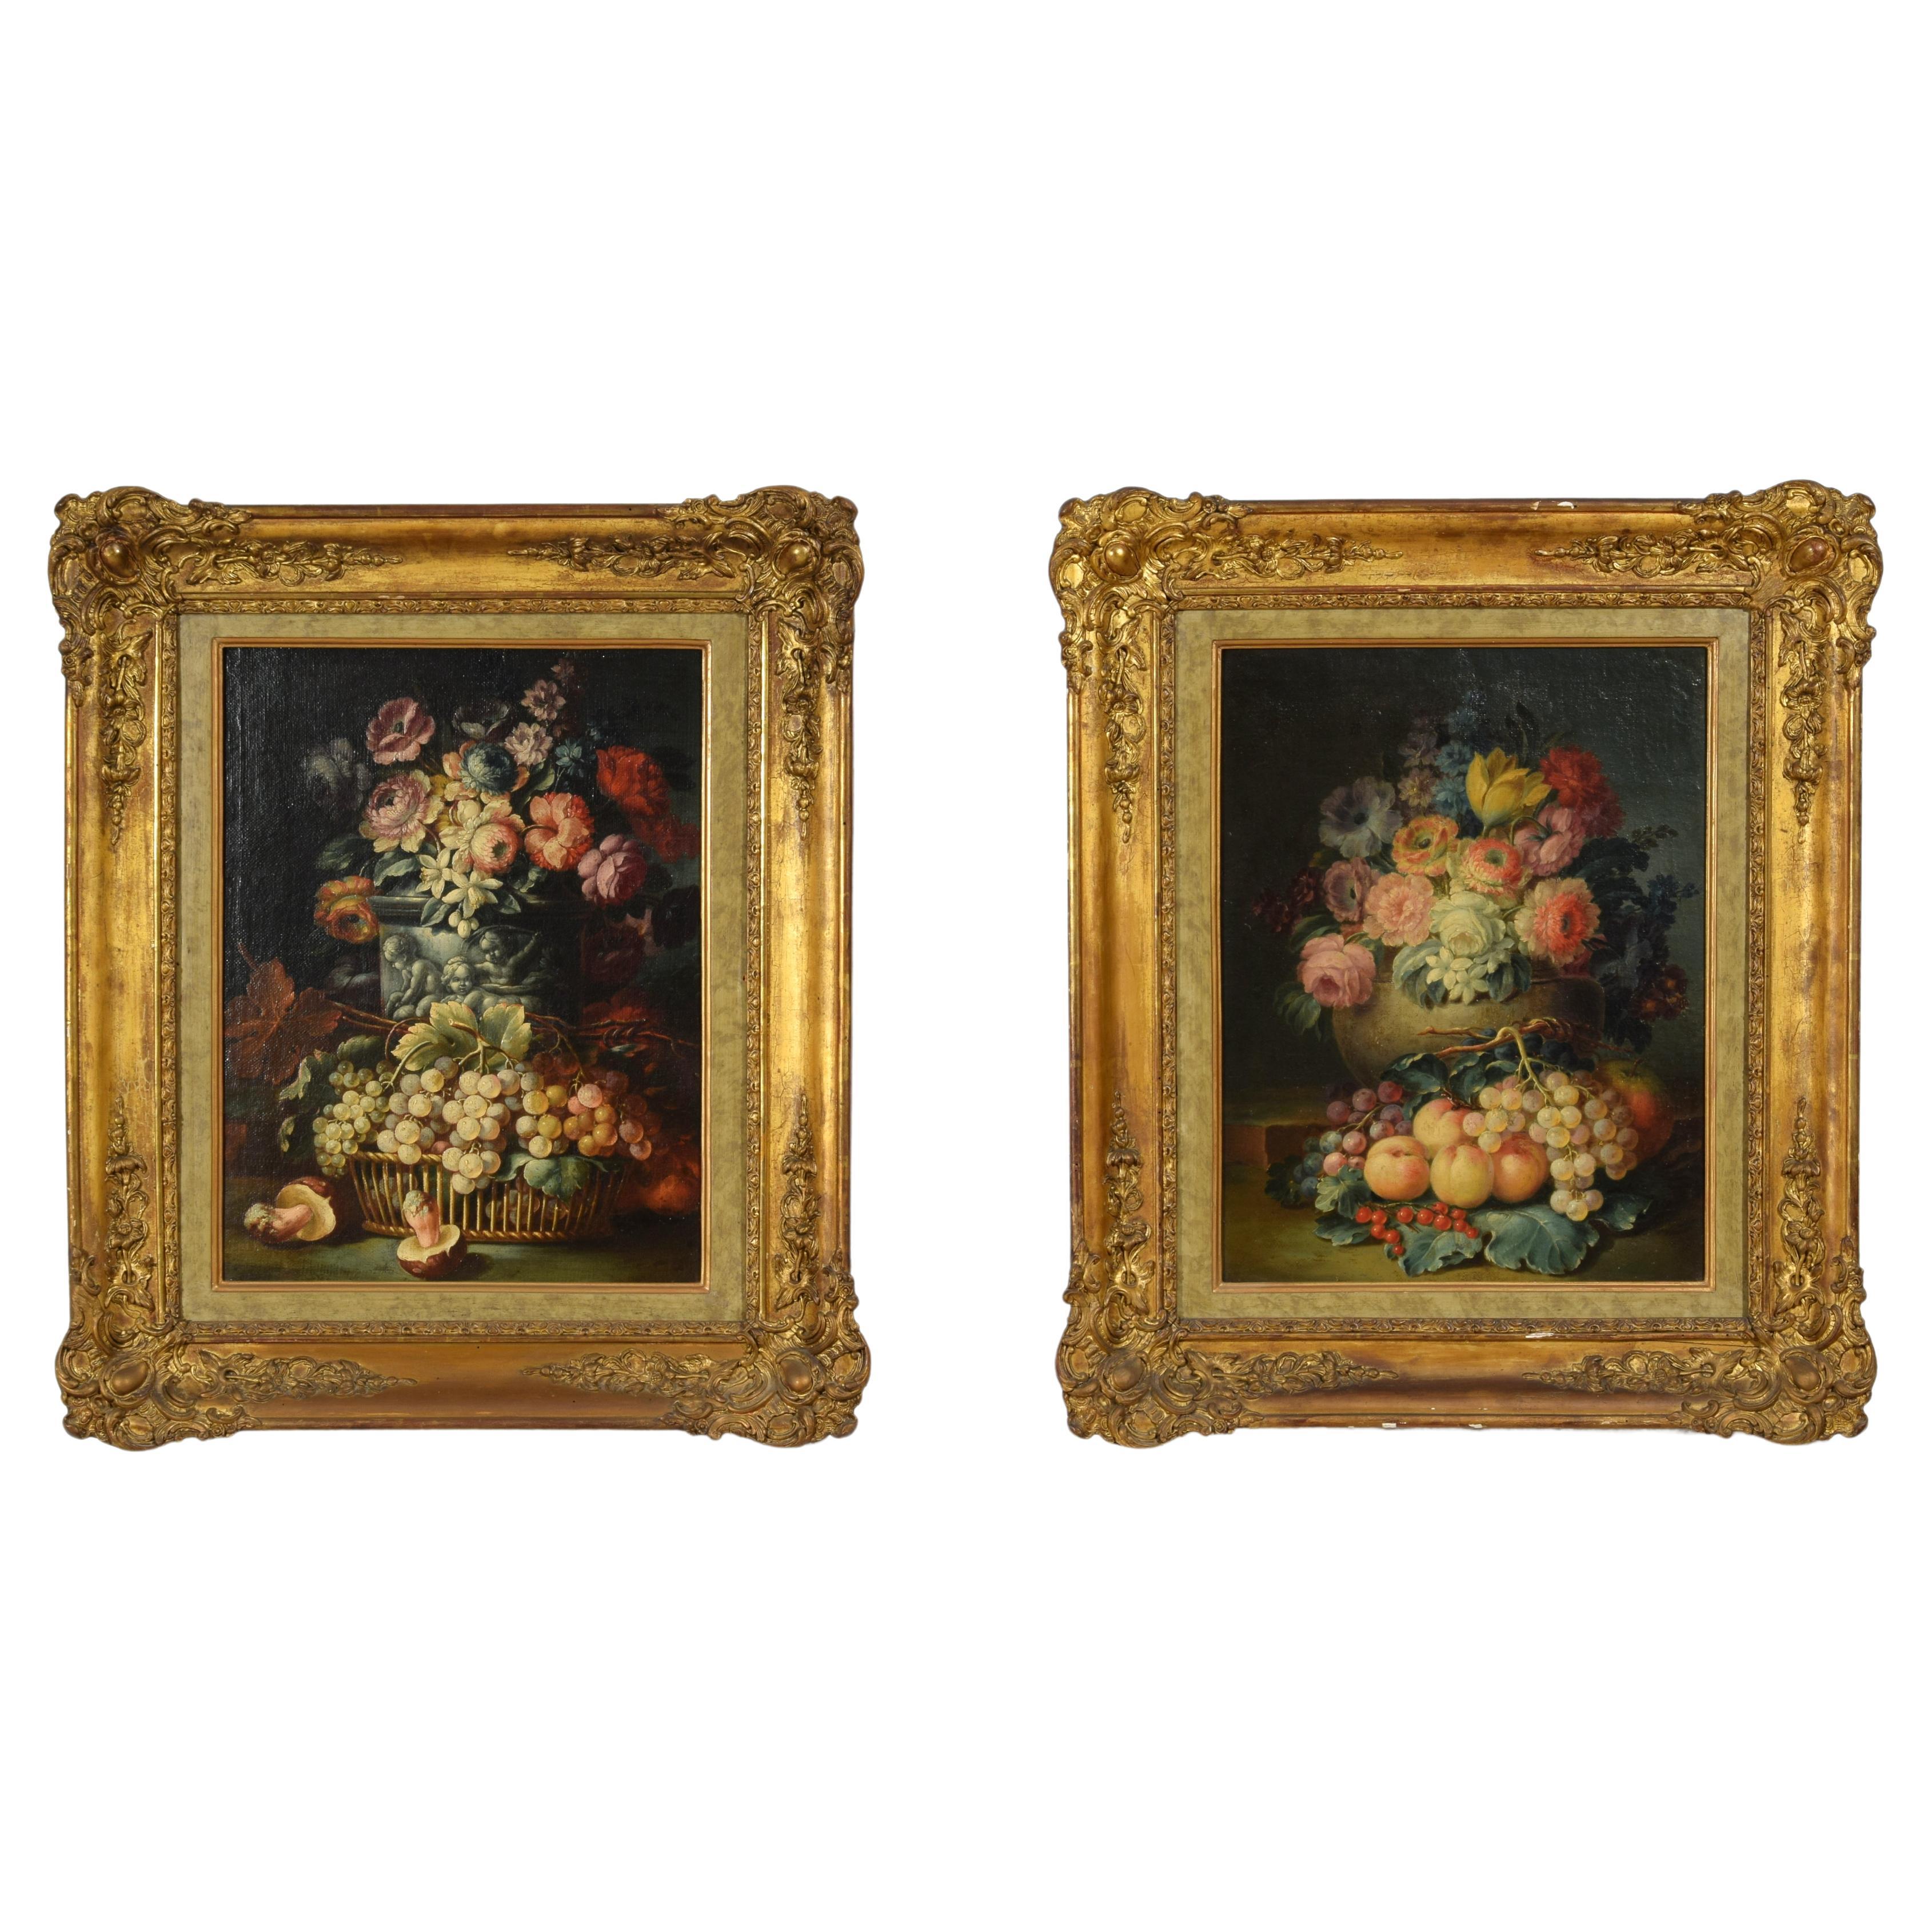 Zwei Stillleben mit Blumen und Früchten aus dem 18. Jahrhundert, italienische Gemälde